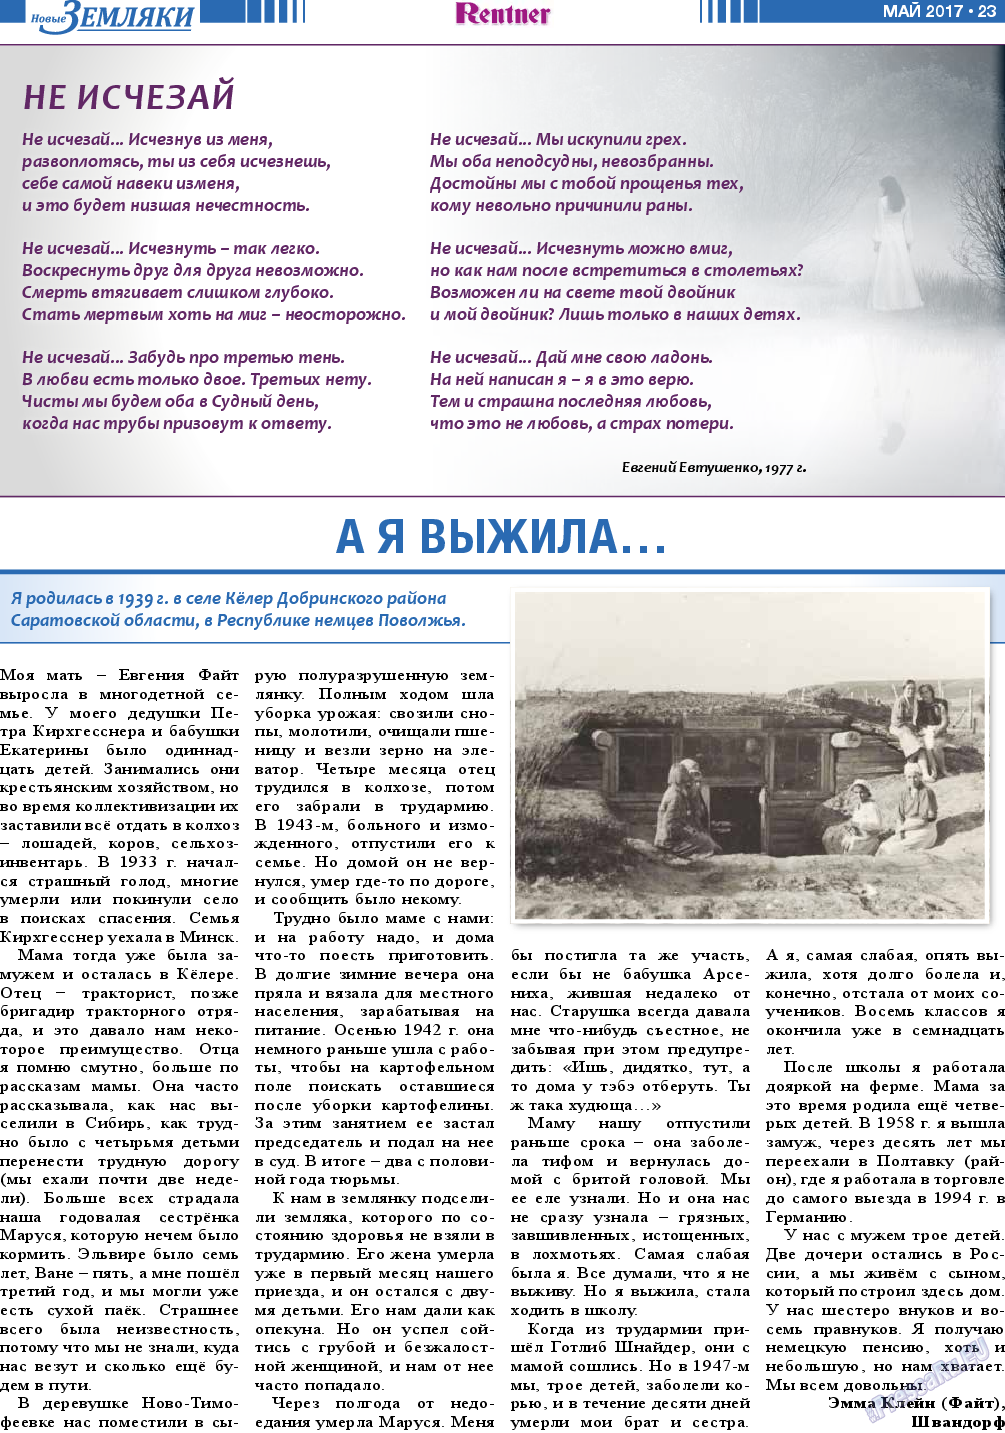 Новые Земляки, газета. 2017 №5 стр.23